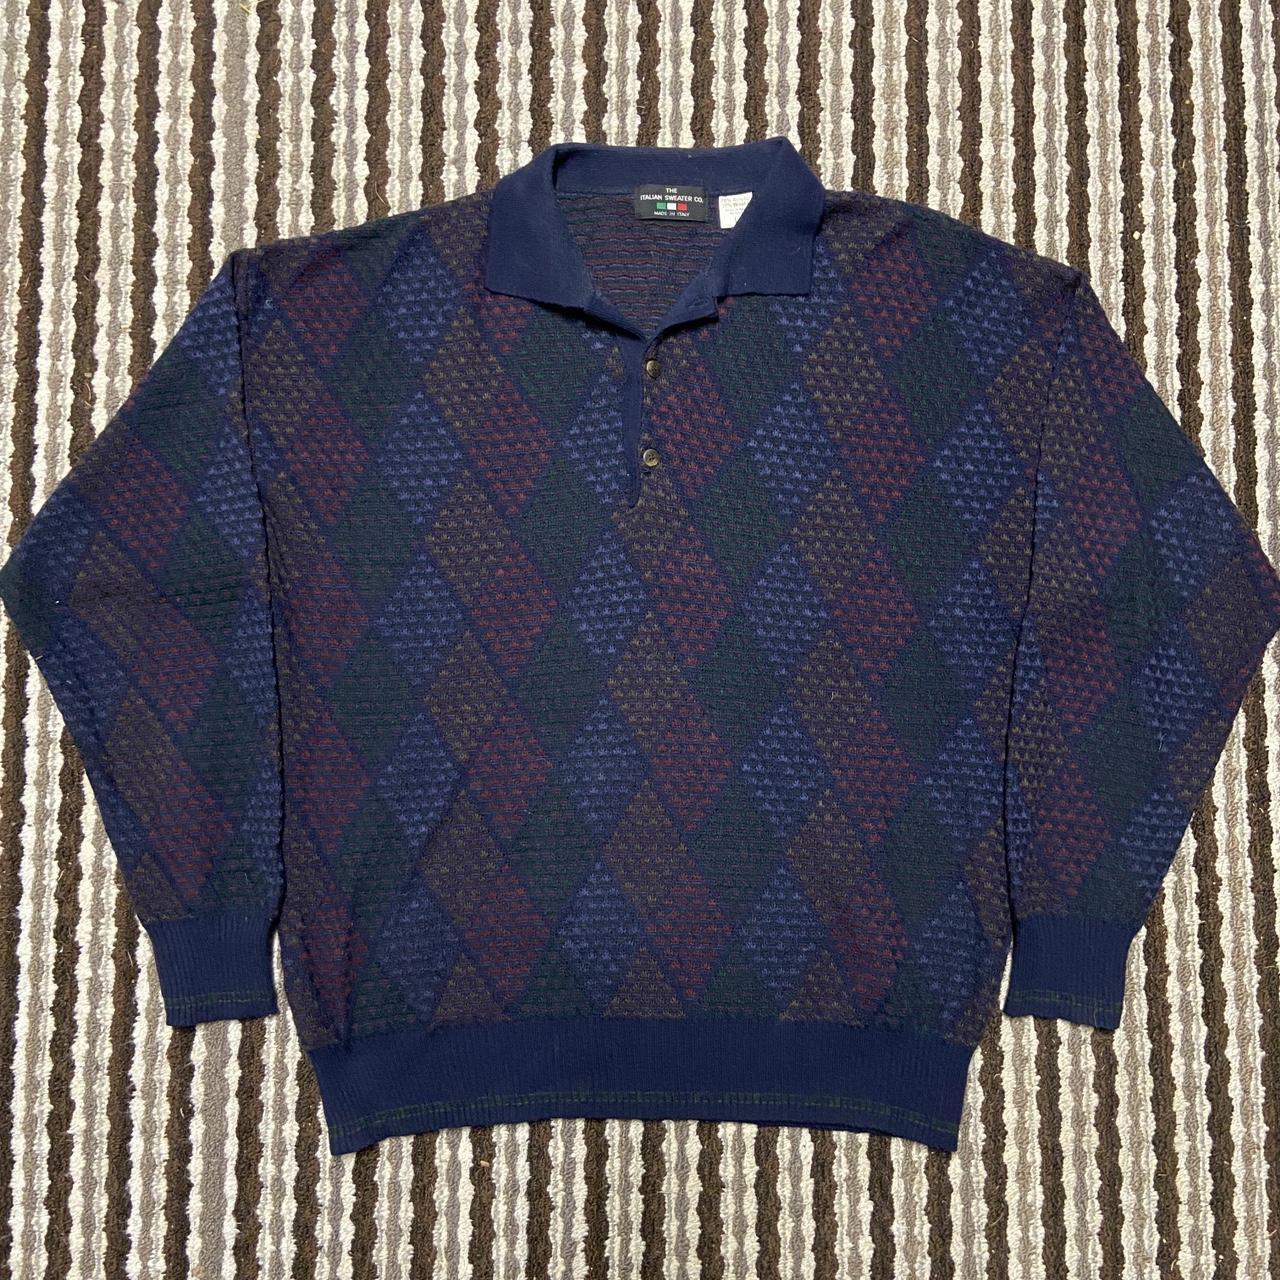 Vintage Italian Wool Multicolored Sweater Size... - Depop